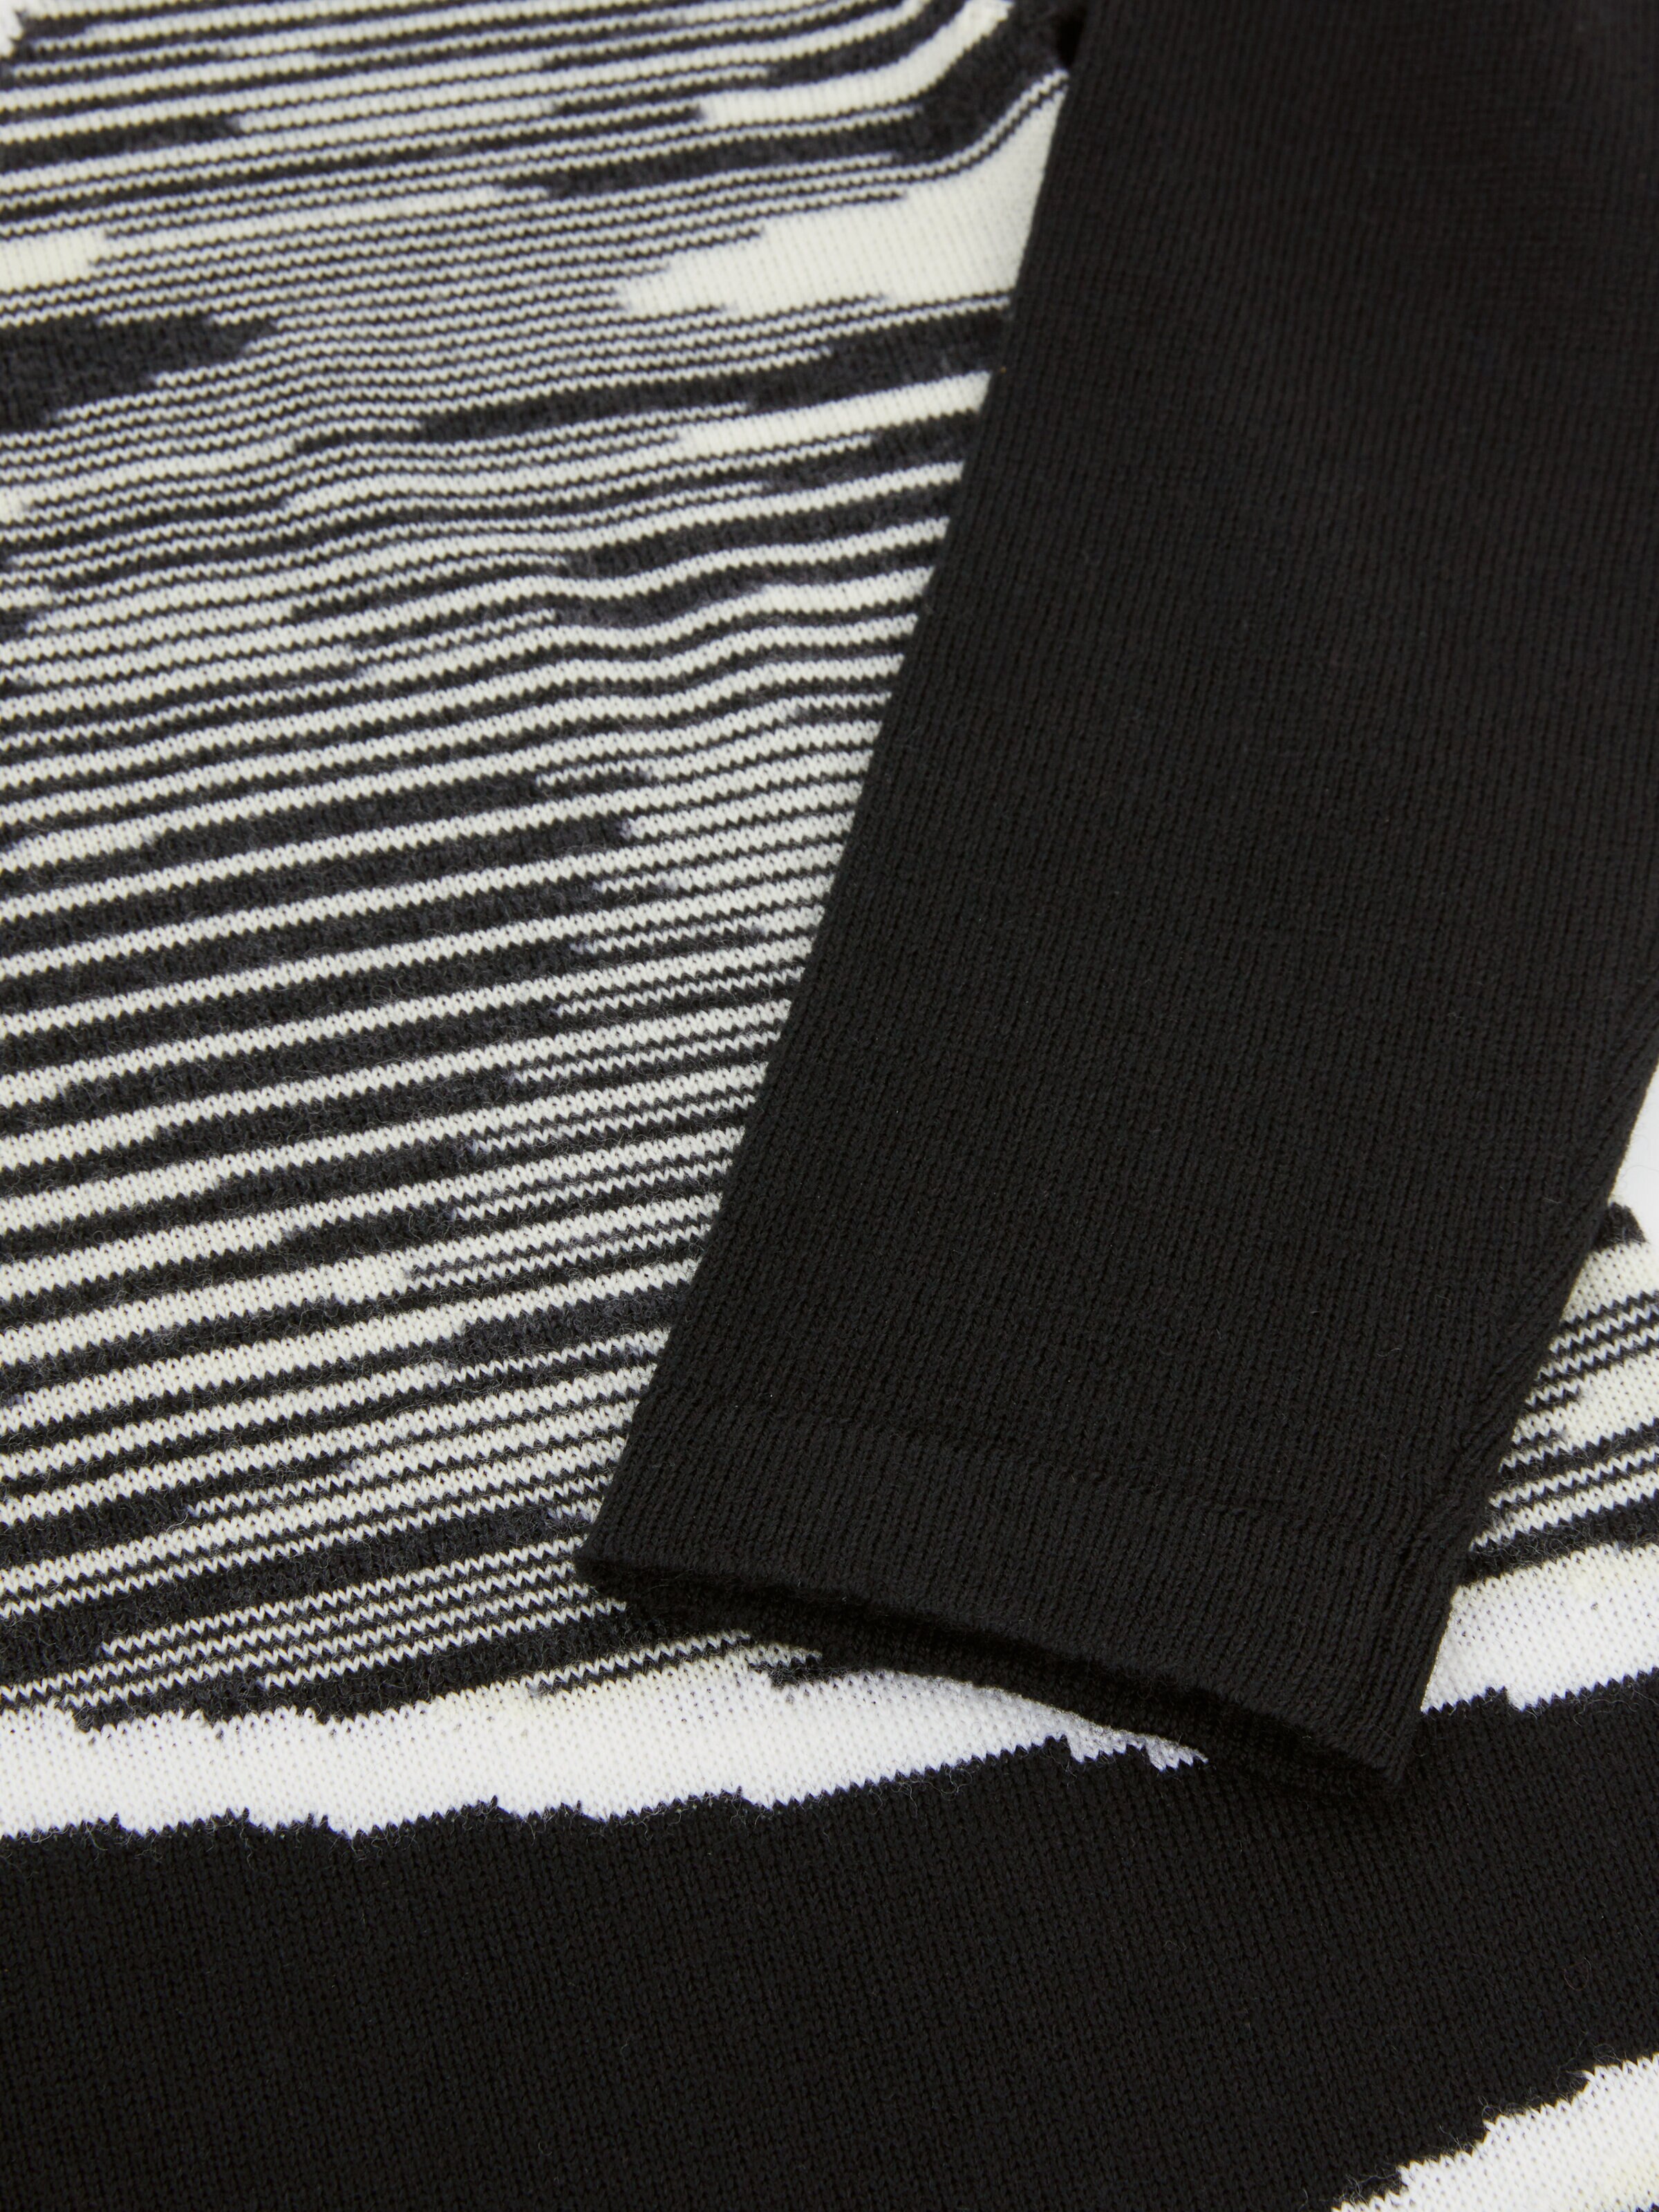 Robe en pure laine vierge, Noir & Blanc - 3